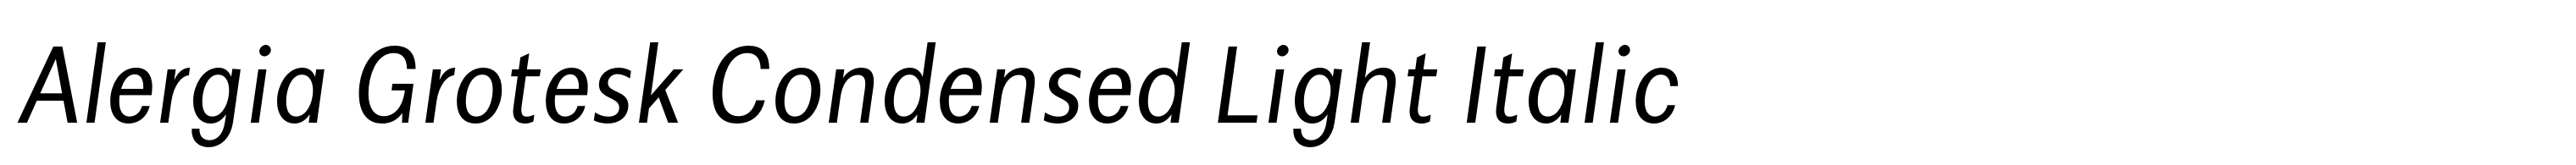 Alergia Grotesk Condensed Light Italic